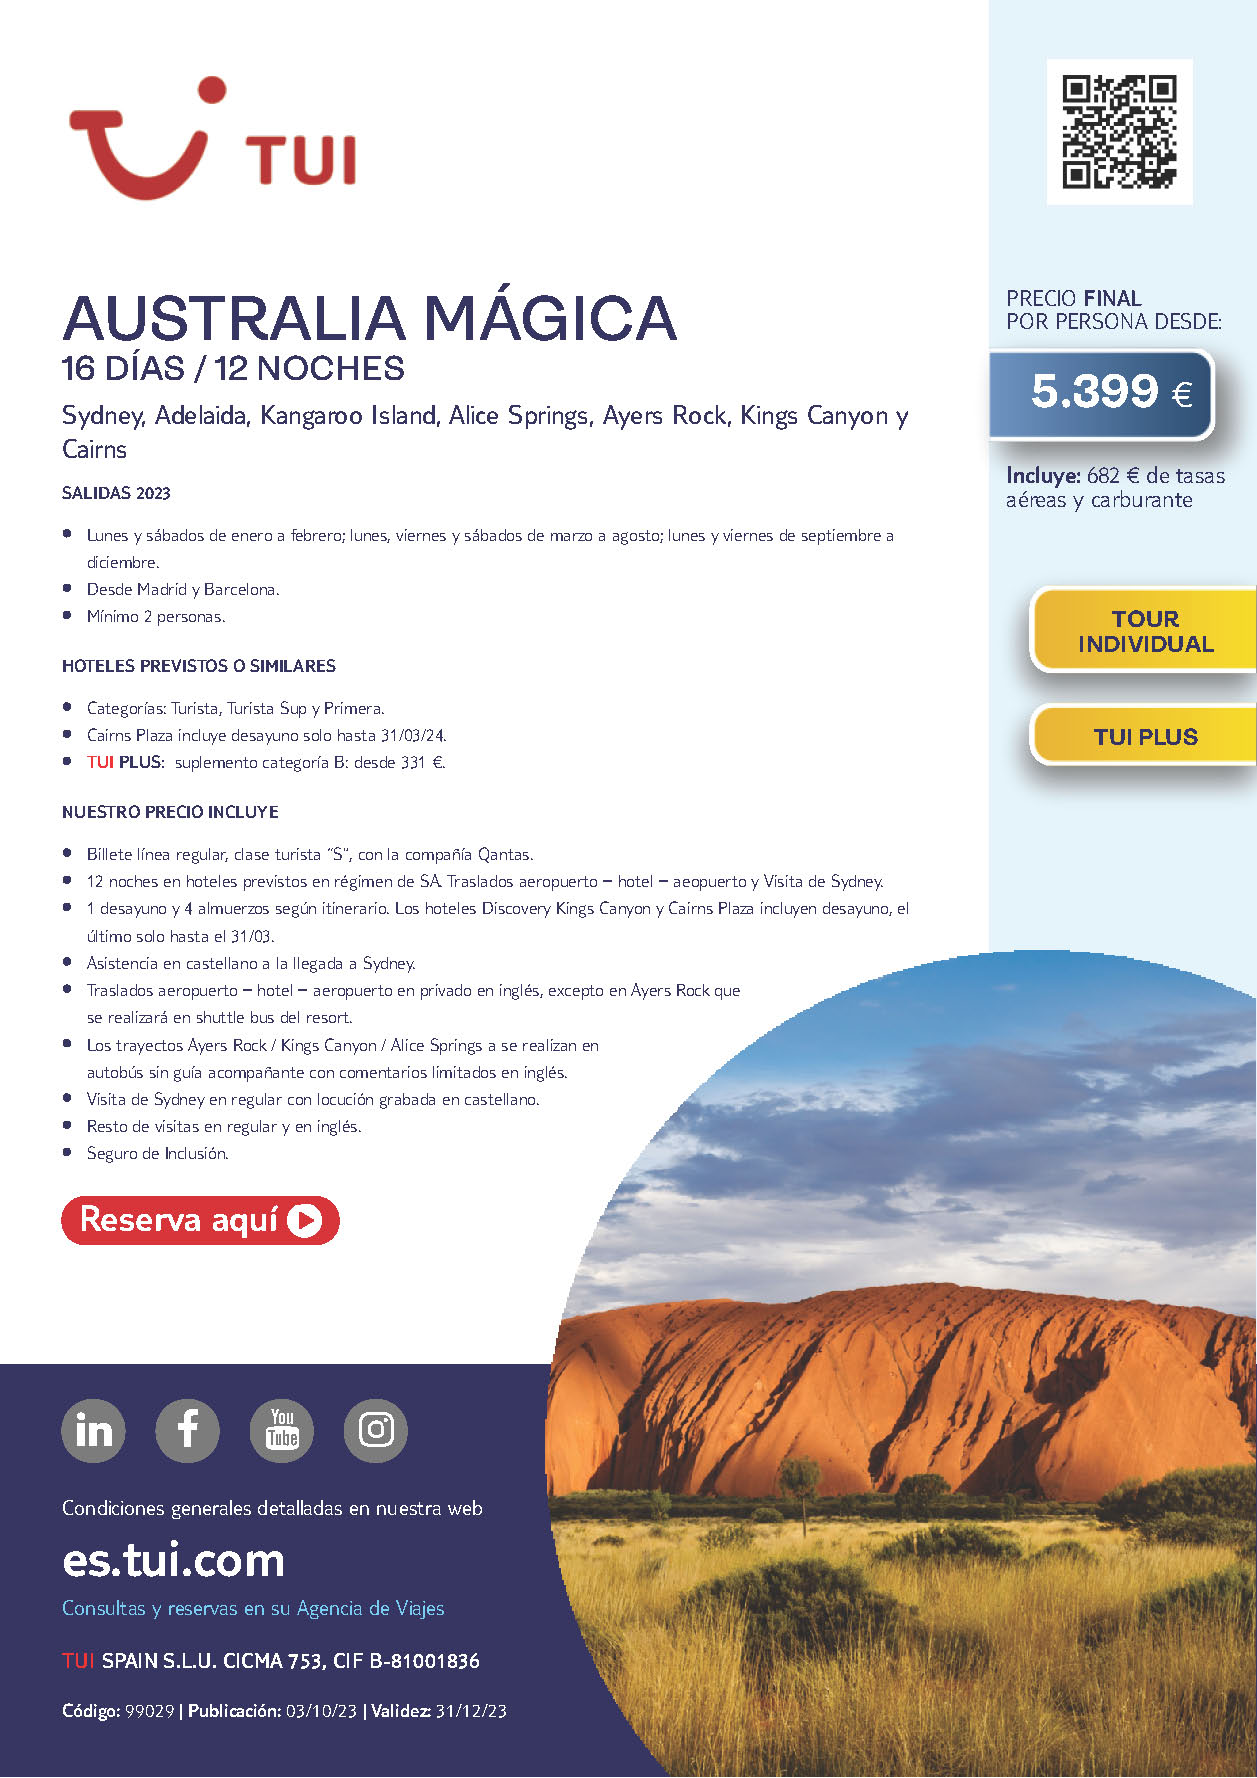 Oferta TUI circuito Australia Magica 16 dias Octubre a Diciembre 2023 salidas desde Madrid y Barcelona vuelos Qantas